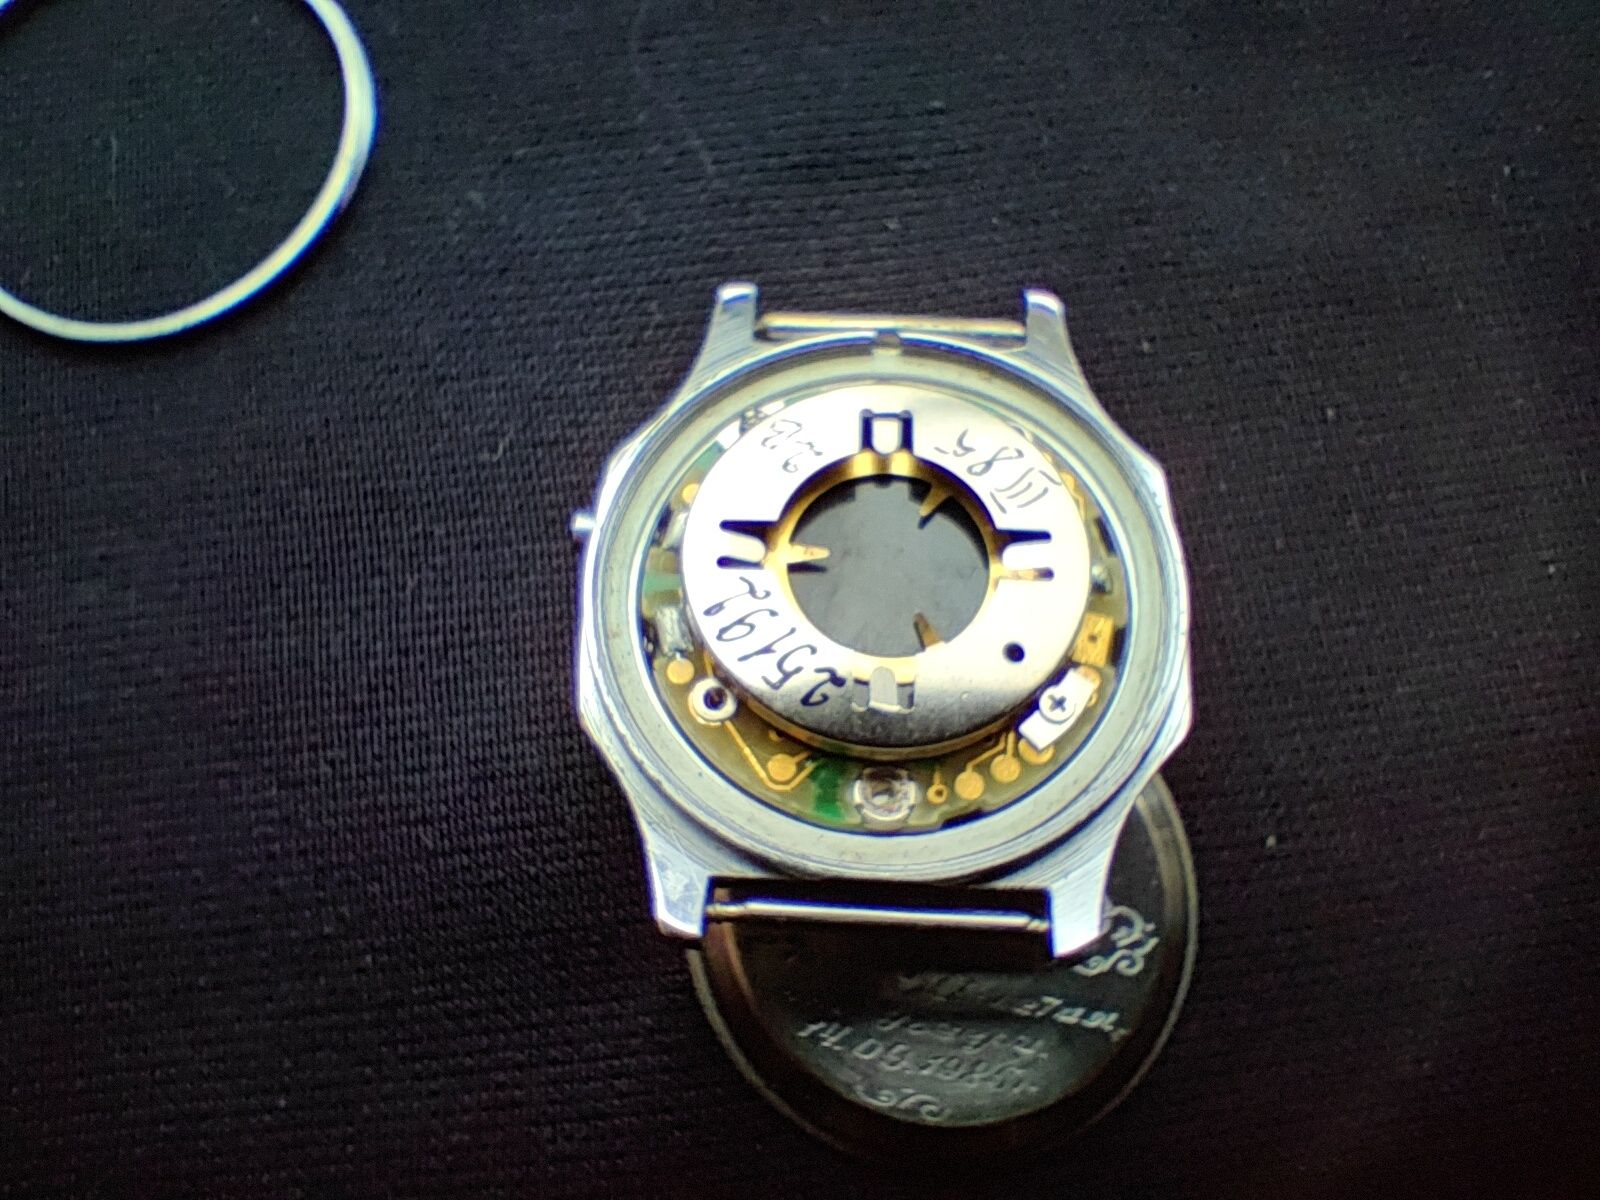 электронные наручные часы Электроника 5 Литий